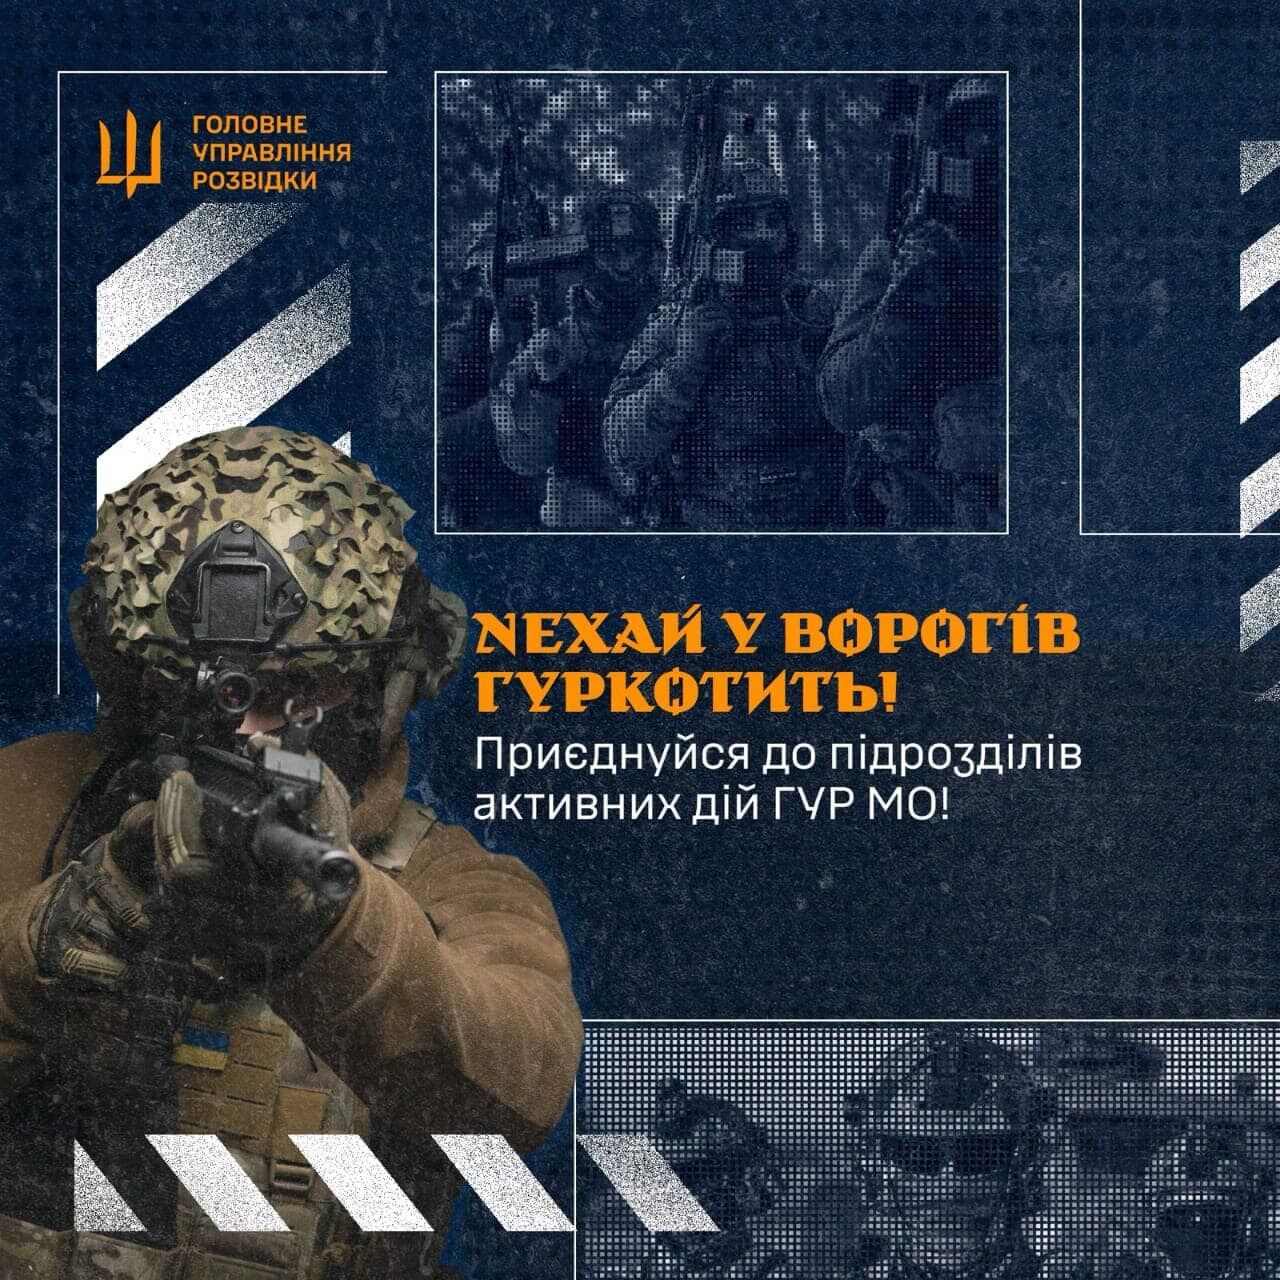 В ГУР объявили набор добровольцев для диверсионных операций в оккупированном Крыму: как приобщиться